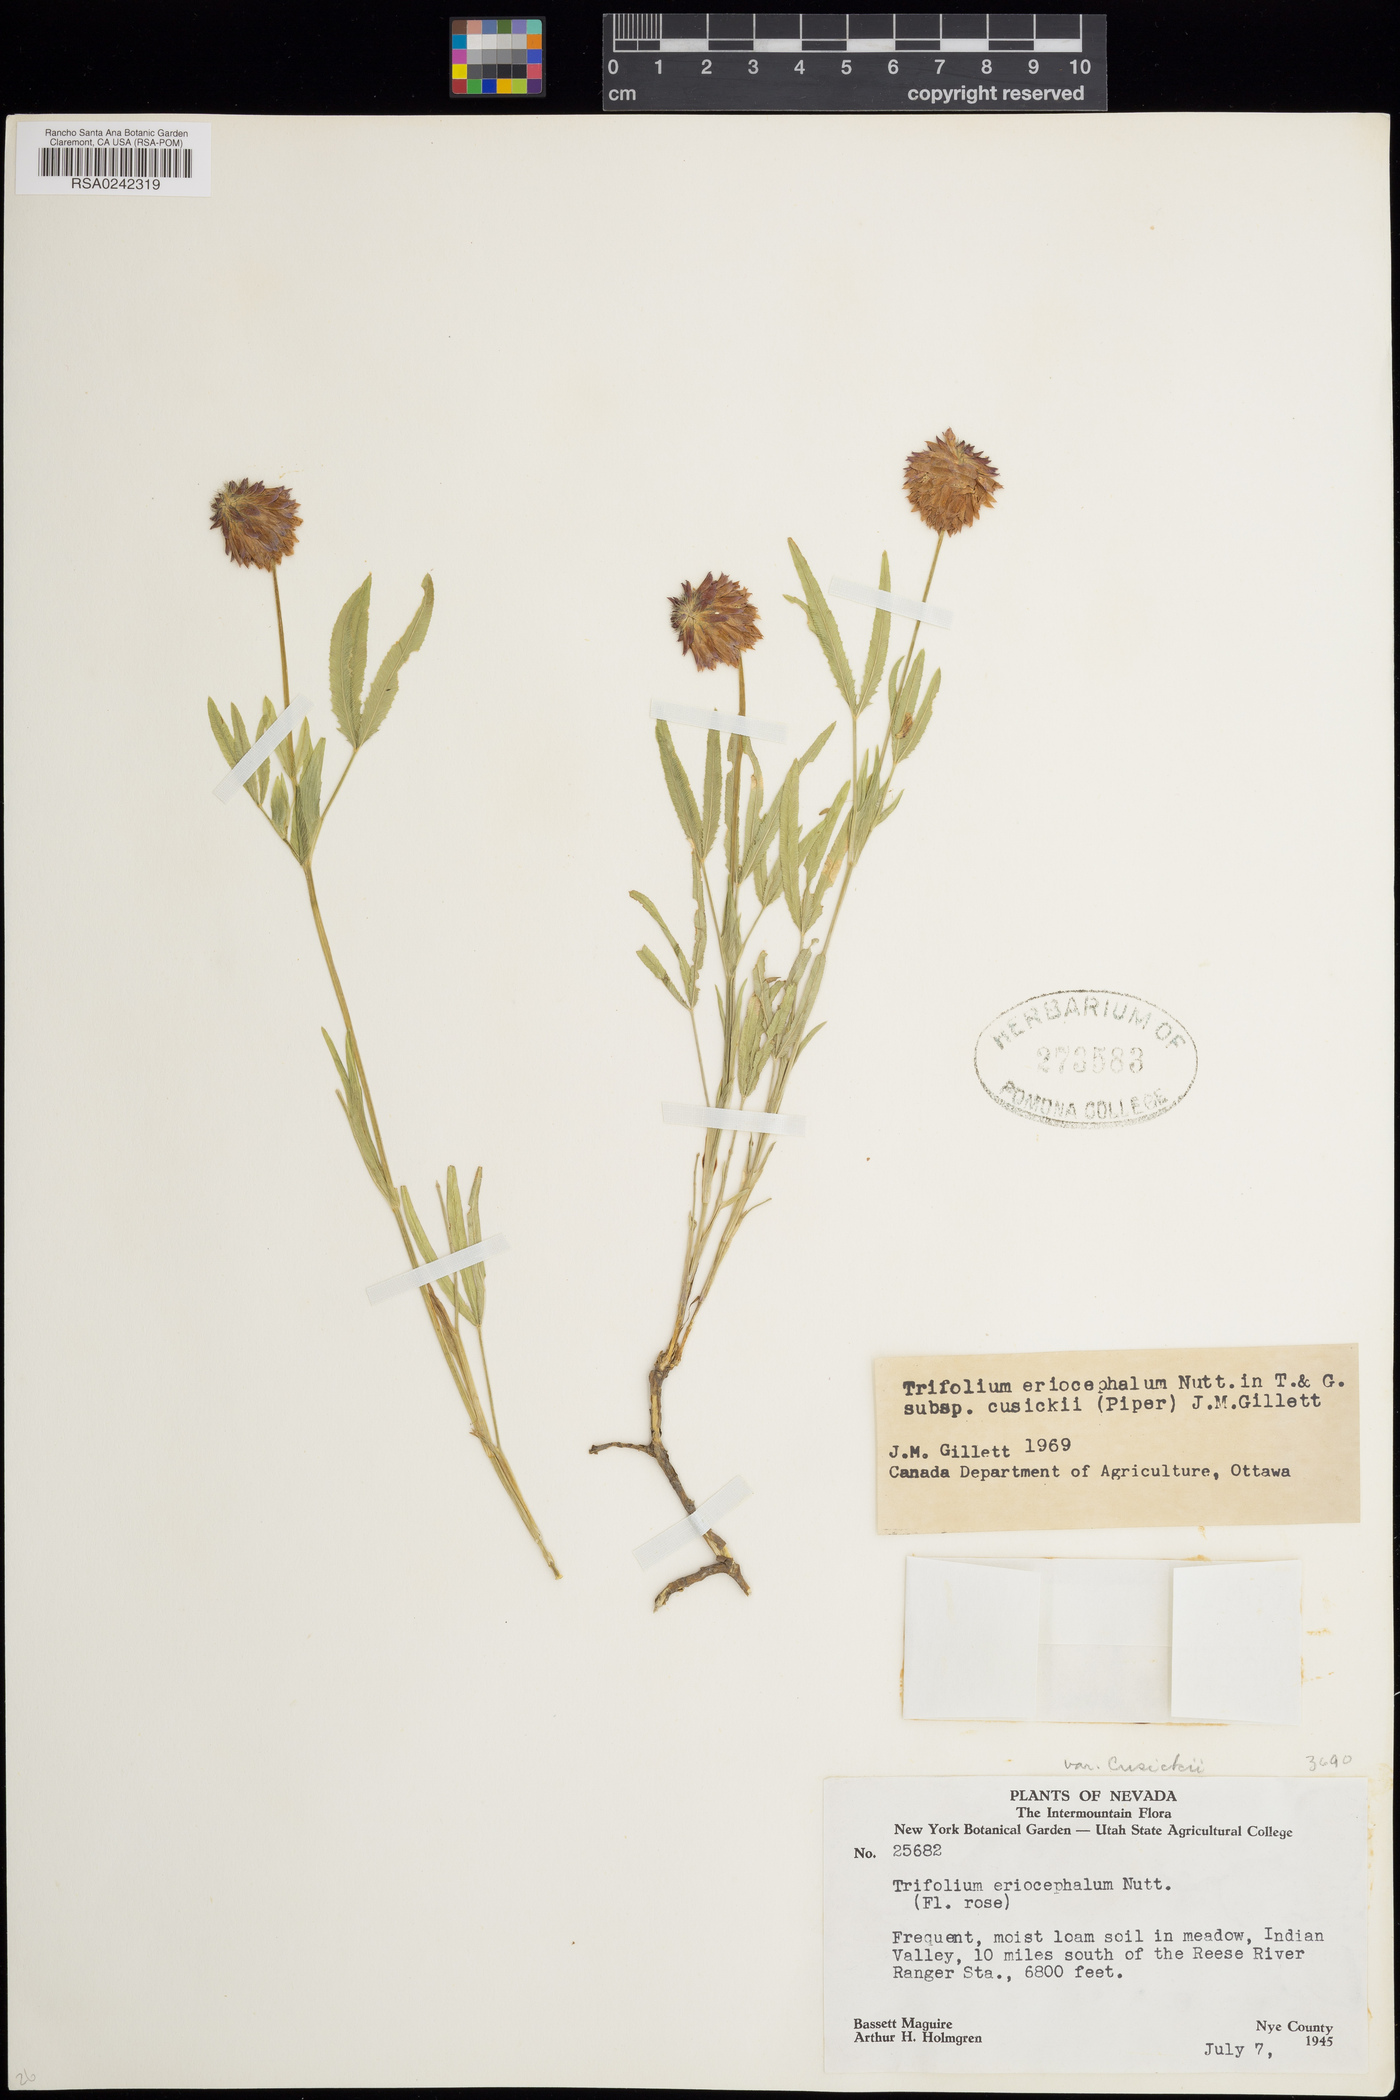 Trifolium eriocephalum subsp. cusickii image